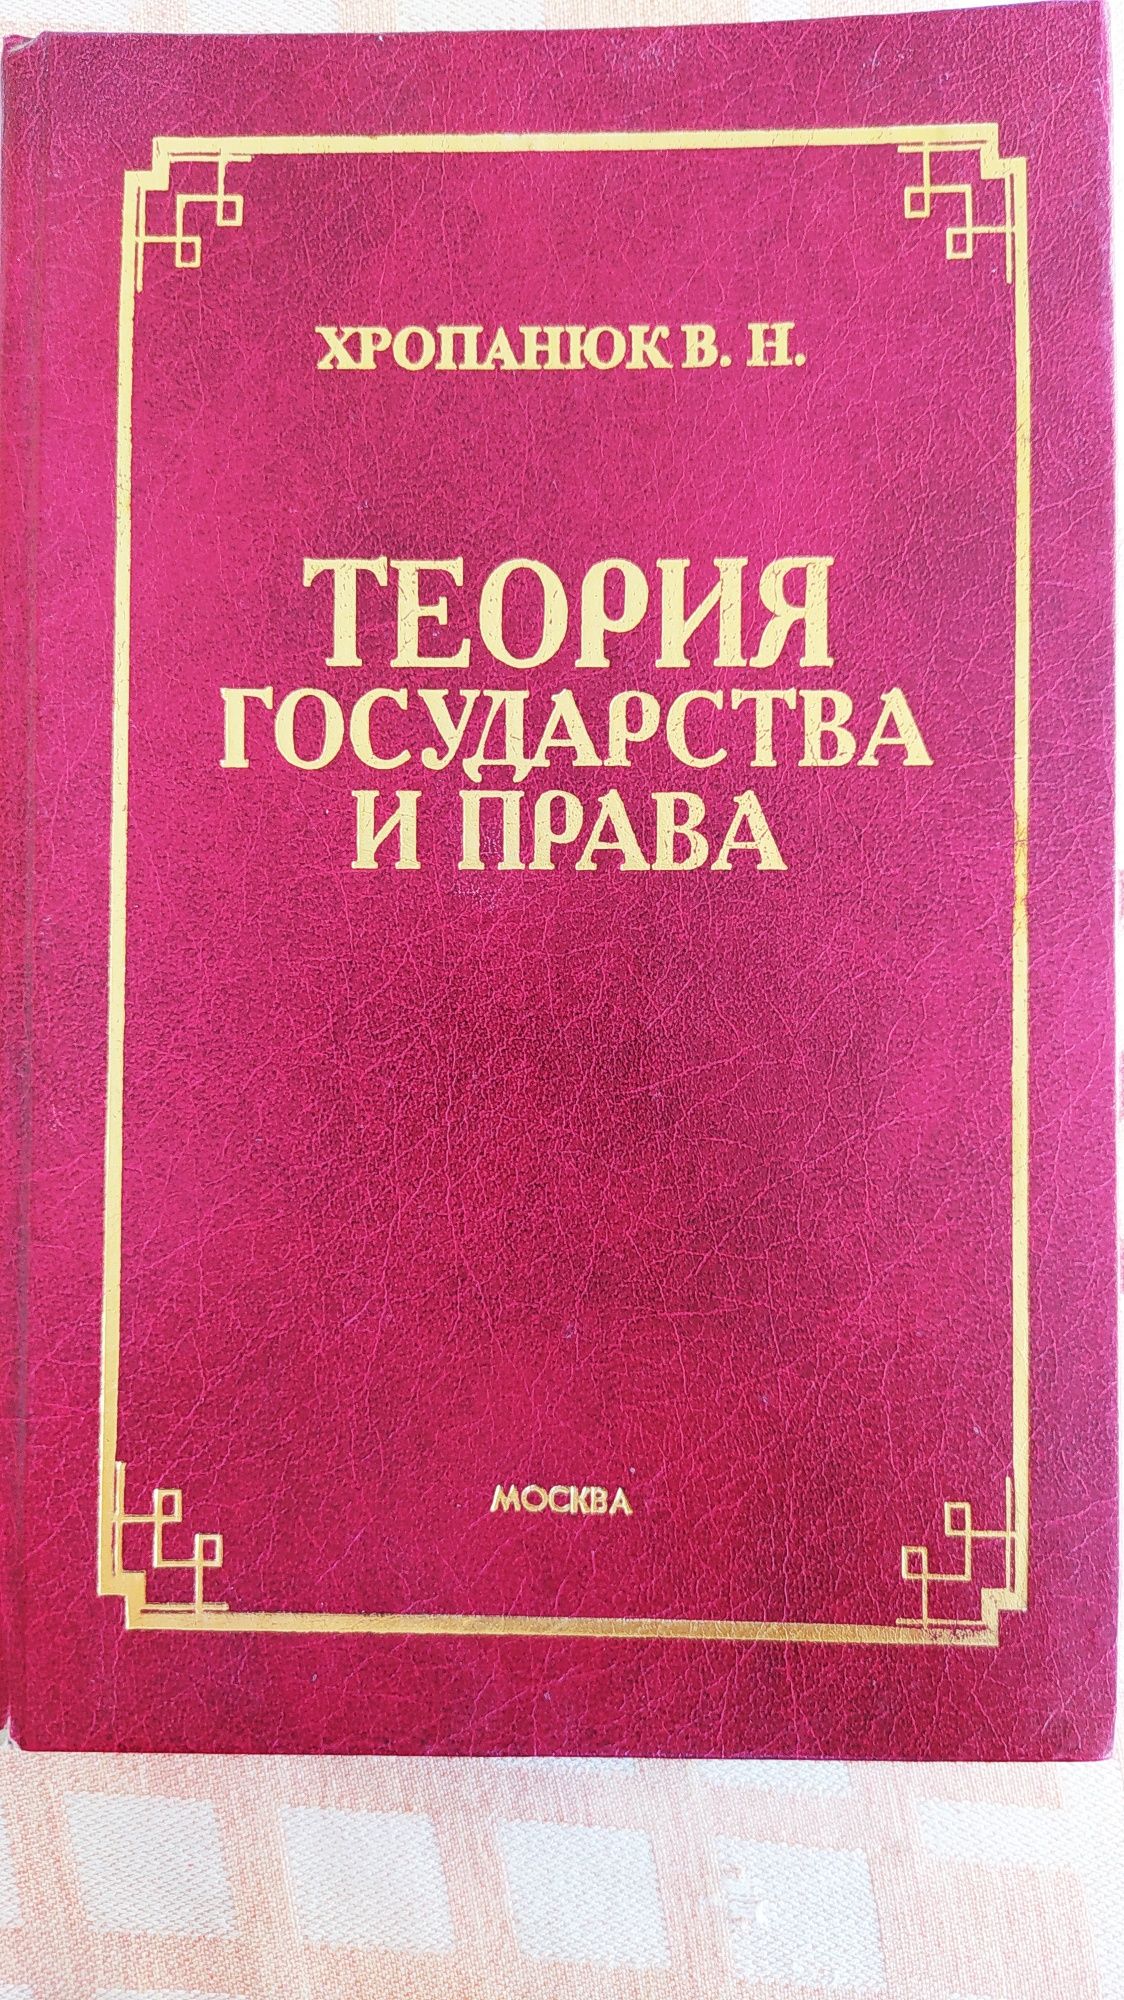 Учебники по Всеобщей истории и ТГП для юридических вузов.